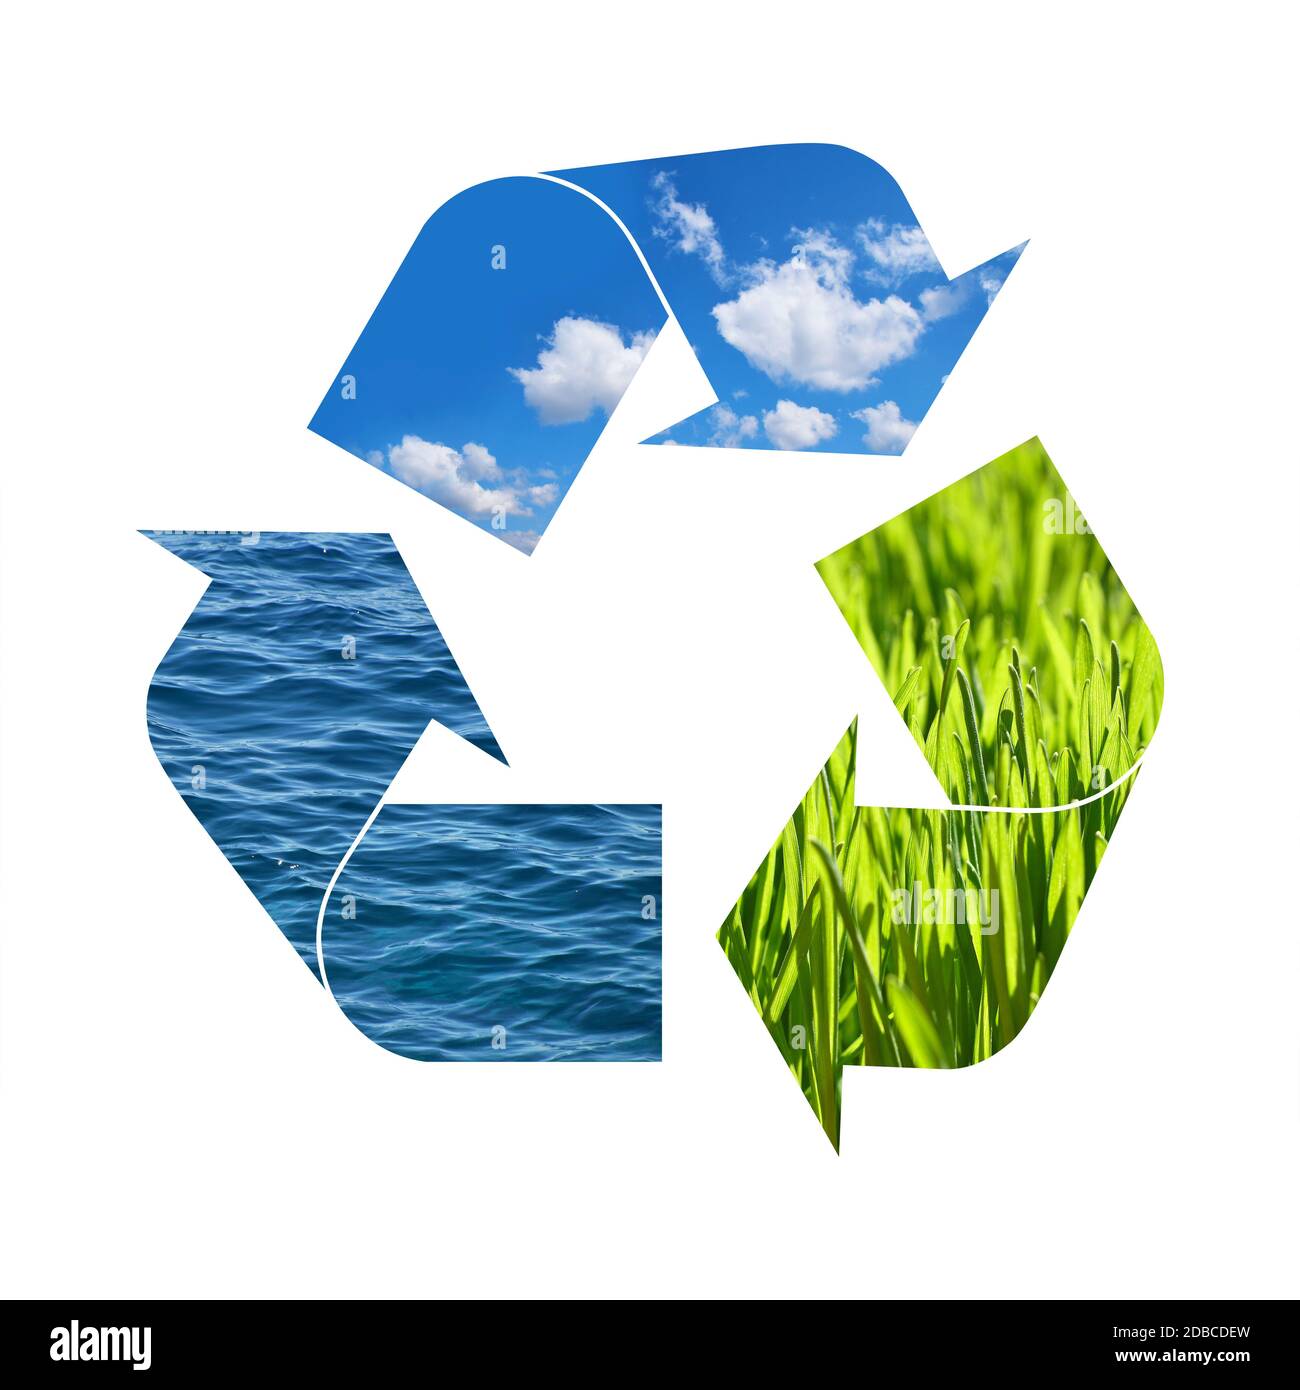 Ilustración símbolo de reciclaje de elementos naturales, hierba verde, cielo azul y agua de mar aislados sobre fondo blanco Foto de stock